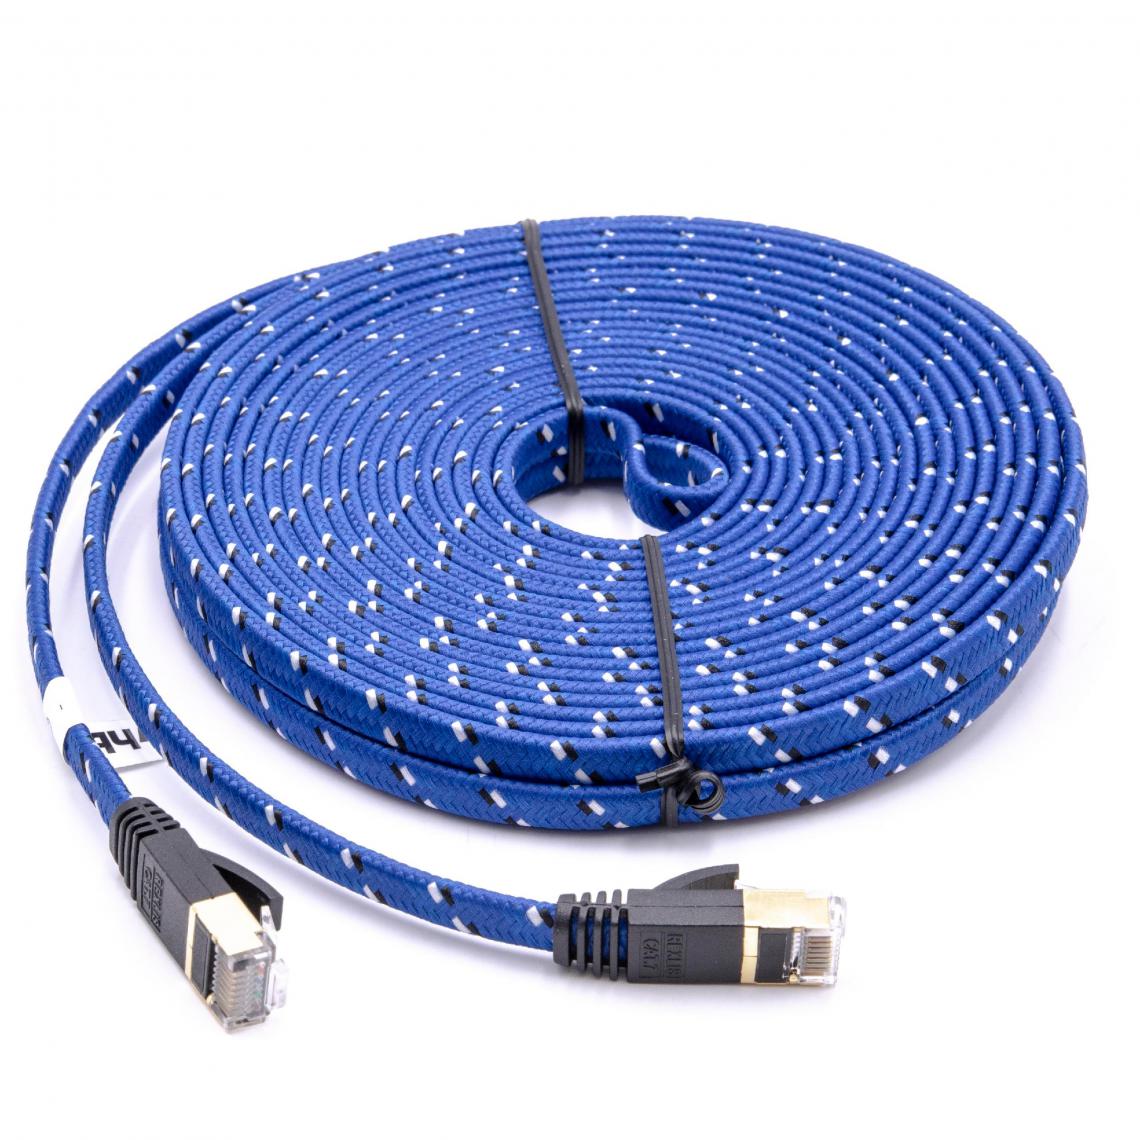 Vhbw - vhbw câble de réseau câble LAN Cat7 10m bleu câble plat - Accessoires alimentation